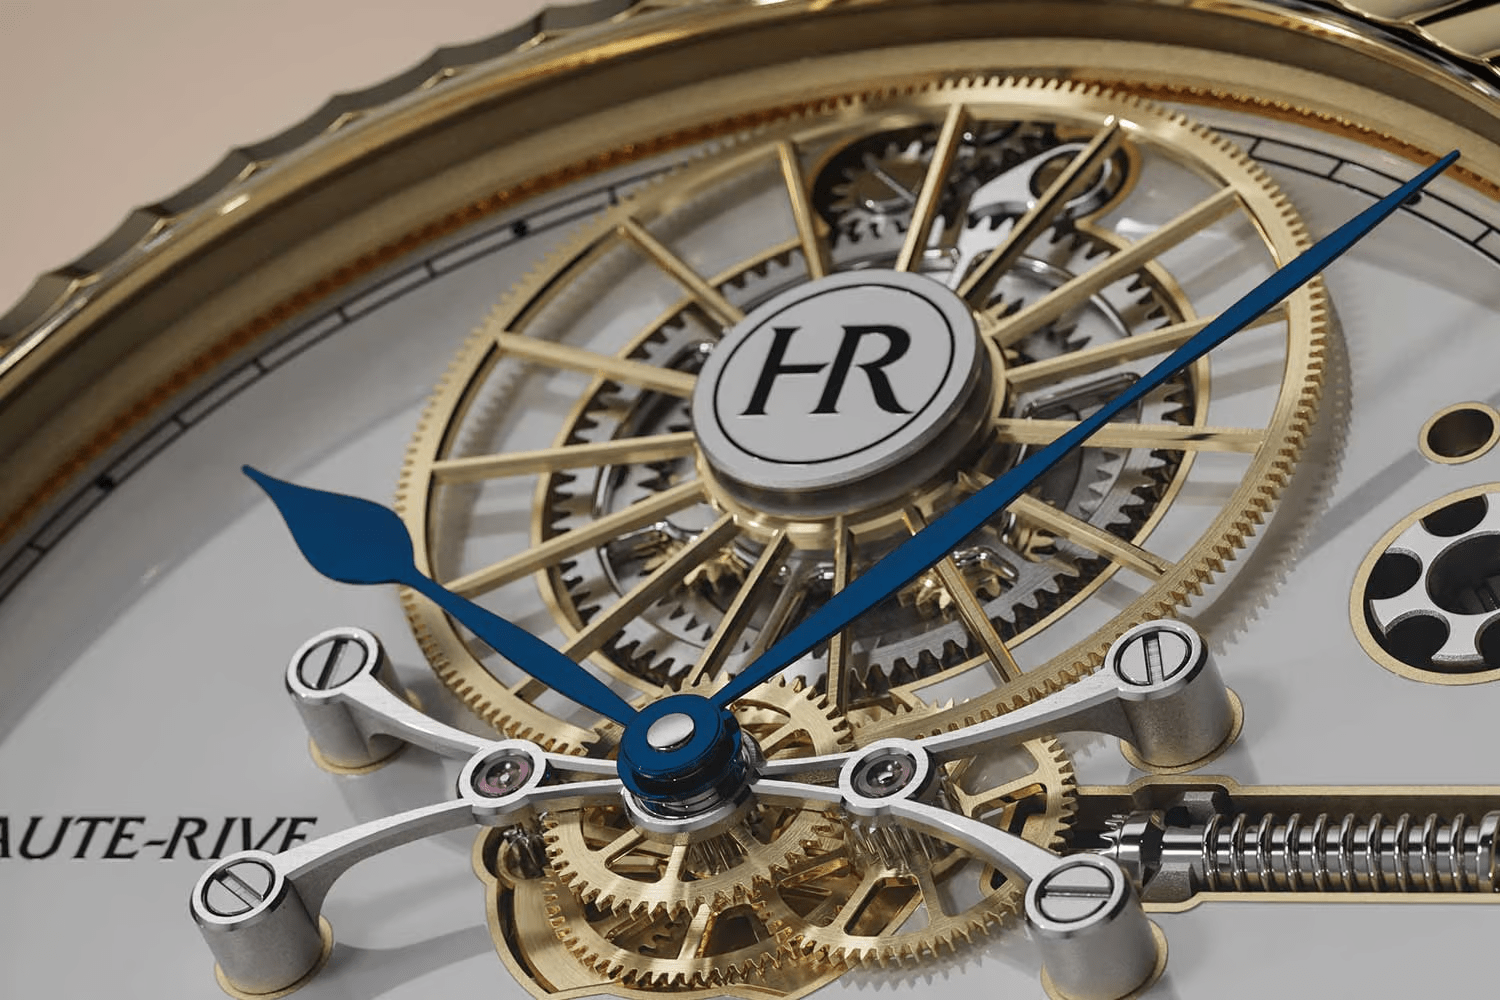  Đồng hồ Tourbillon Haute-Rive Honoris I